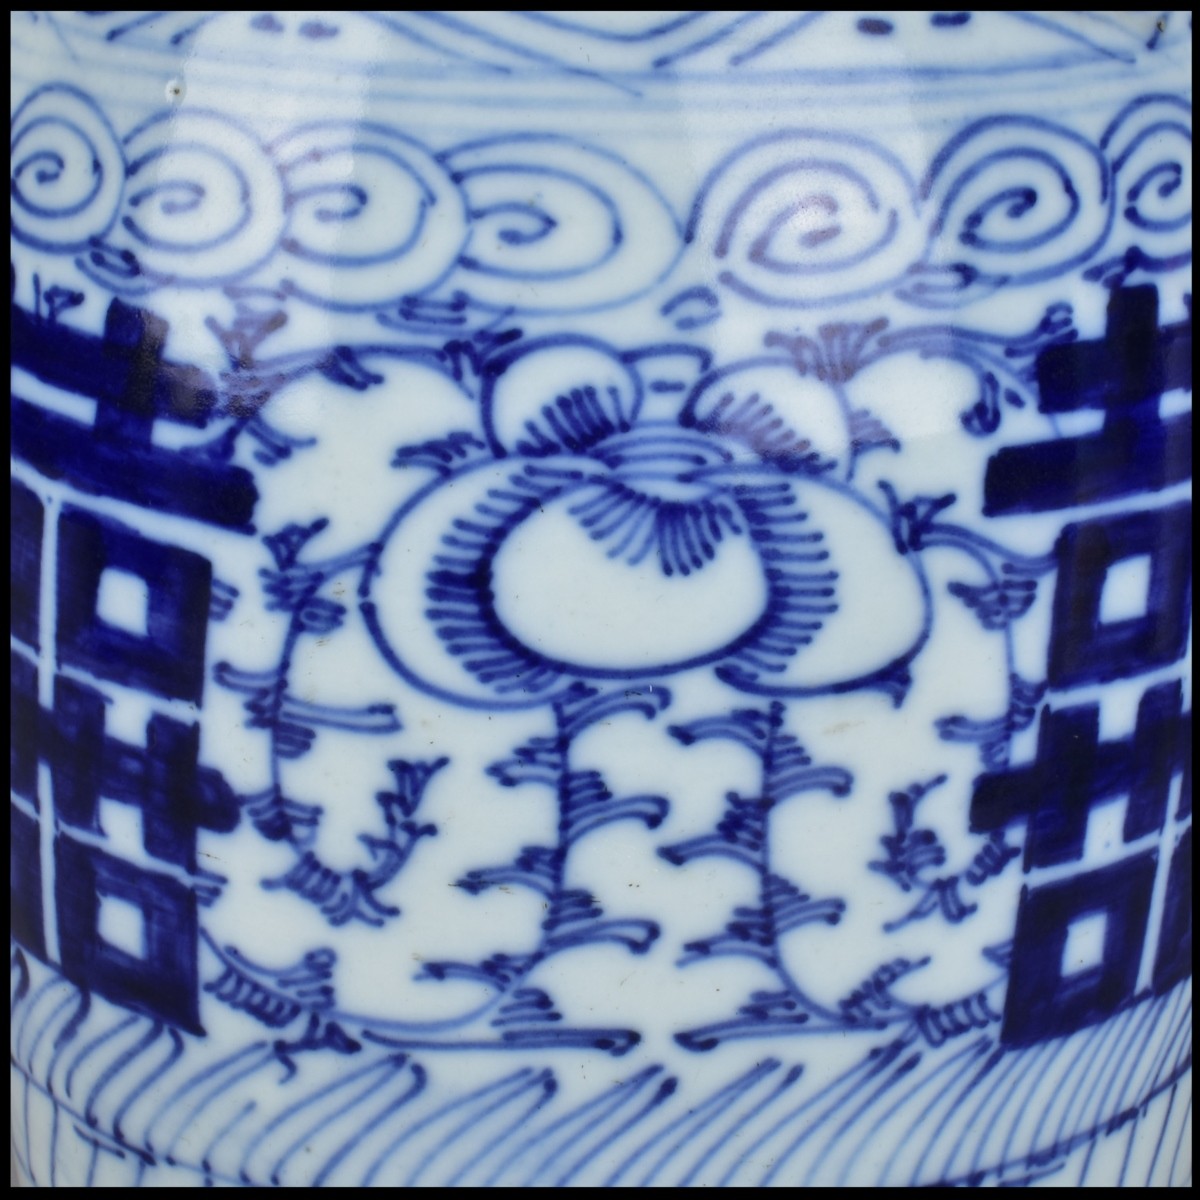 Large Chinese Blue and White Porcelain Vase